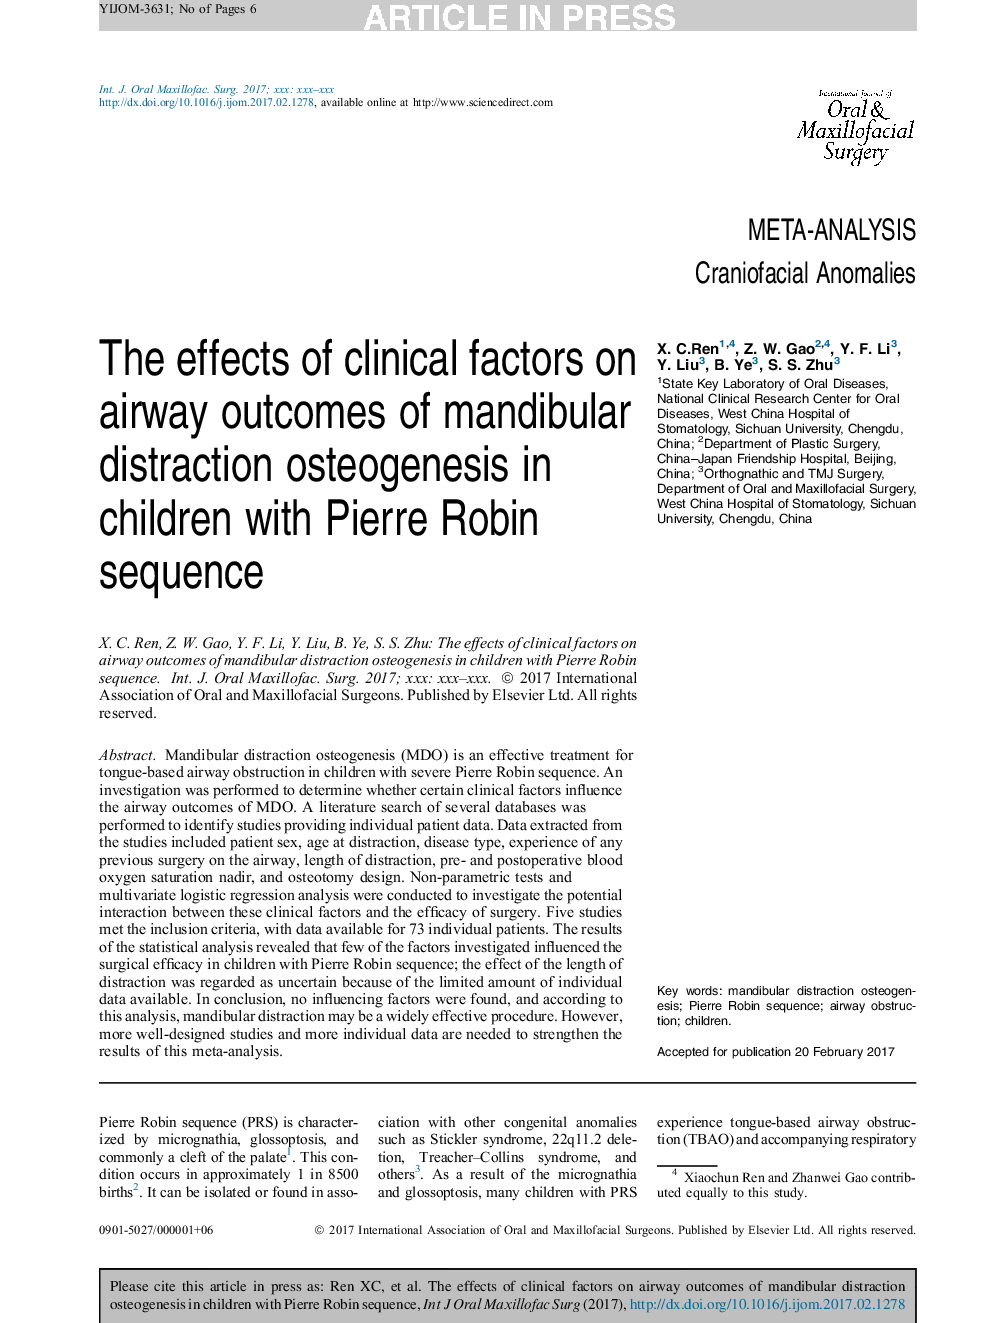 تأثیر عوامل بالینی بر نتایج ناشی از استئوآرتریسم انحراف فکری مندیبول در کودکان مبتلا به سرطان پیرو رابین 